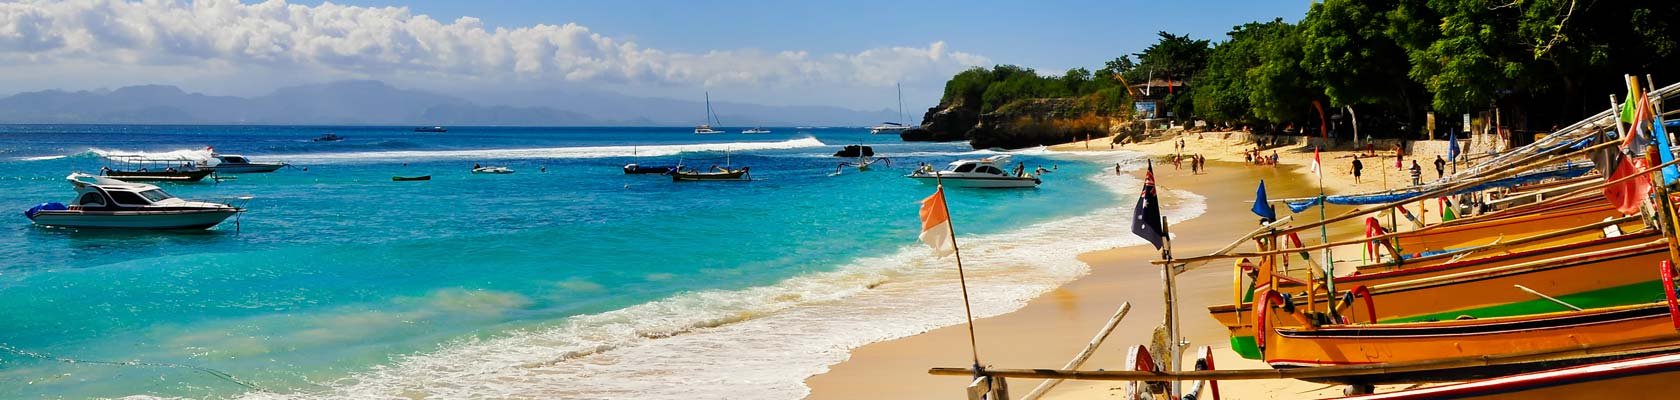 stranden van Bali